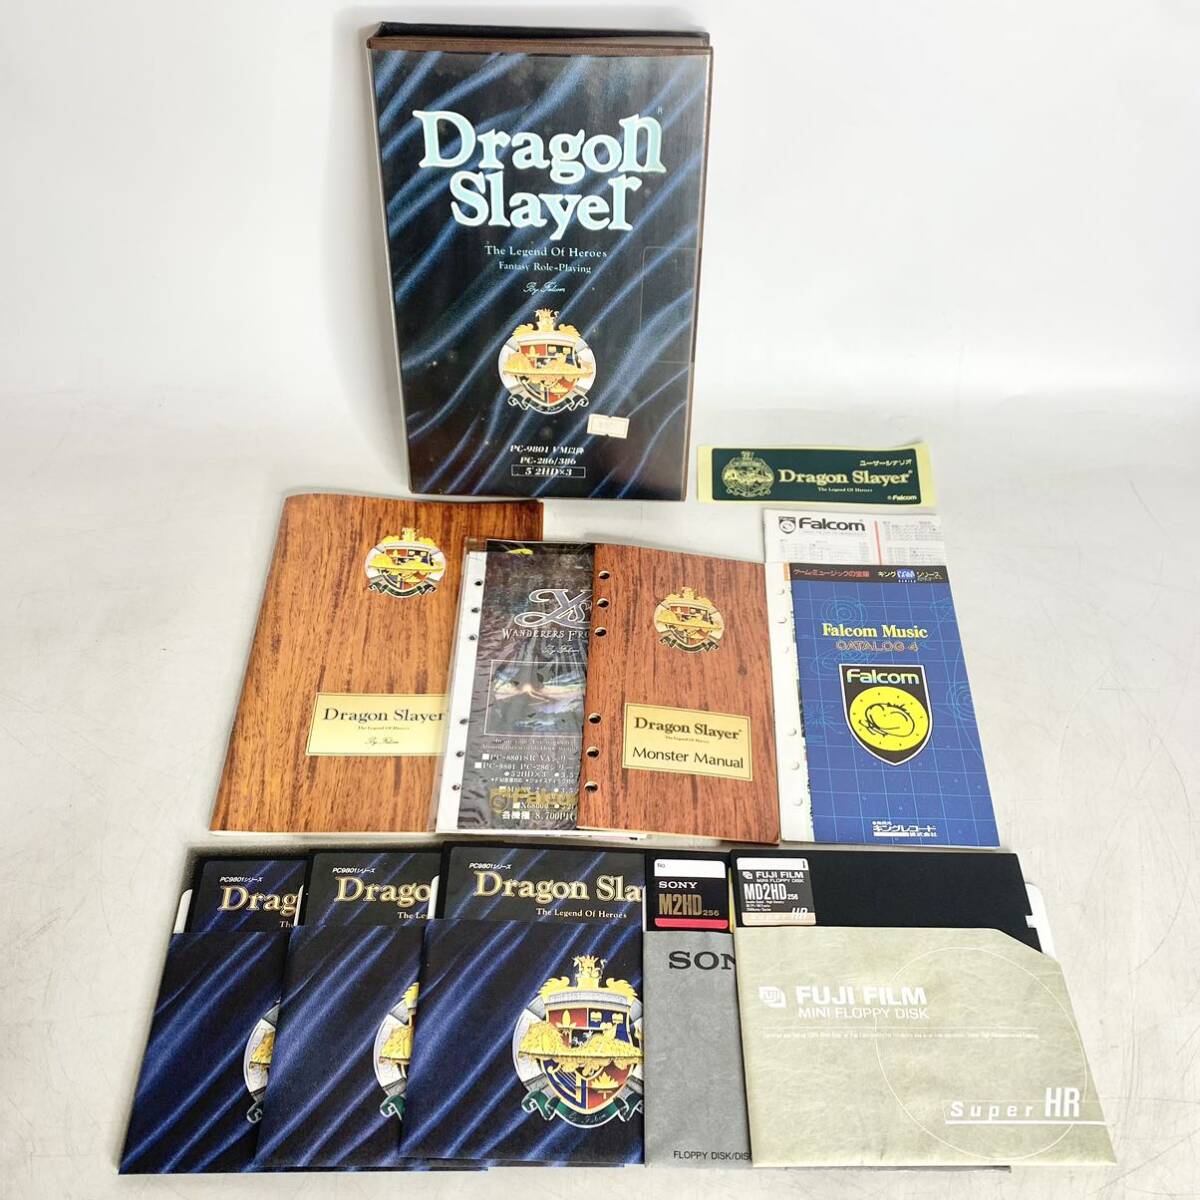  дракон  ... слой  　...　PC-9801　5 дюймов 　2HD ×3　 ретро 　 игра  　Dragon Slayer　...　Falcom　 товар в состоянии "как есть" 